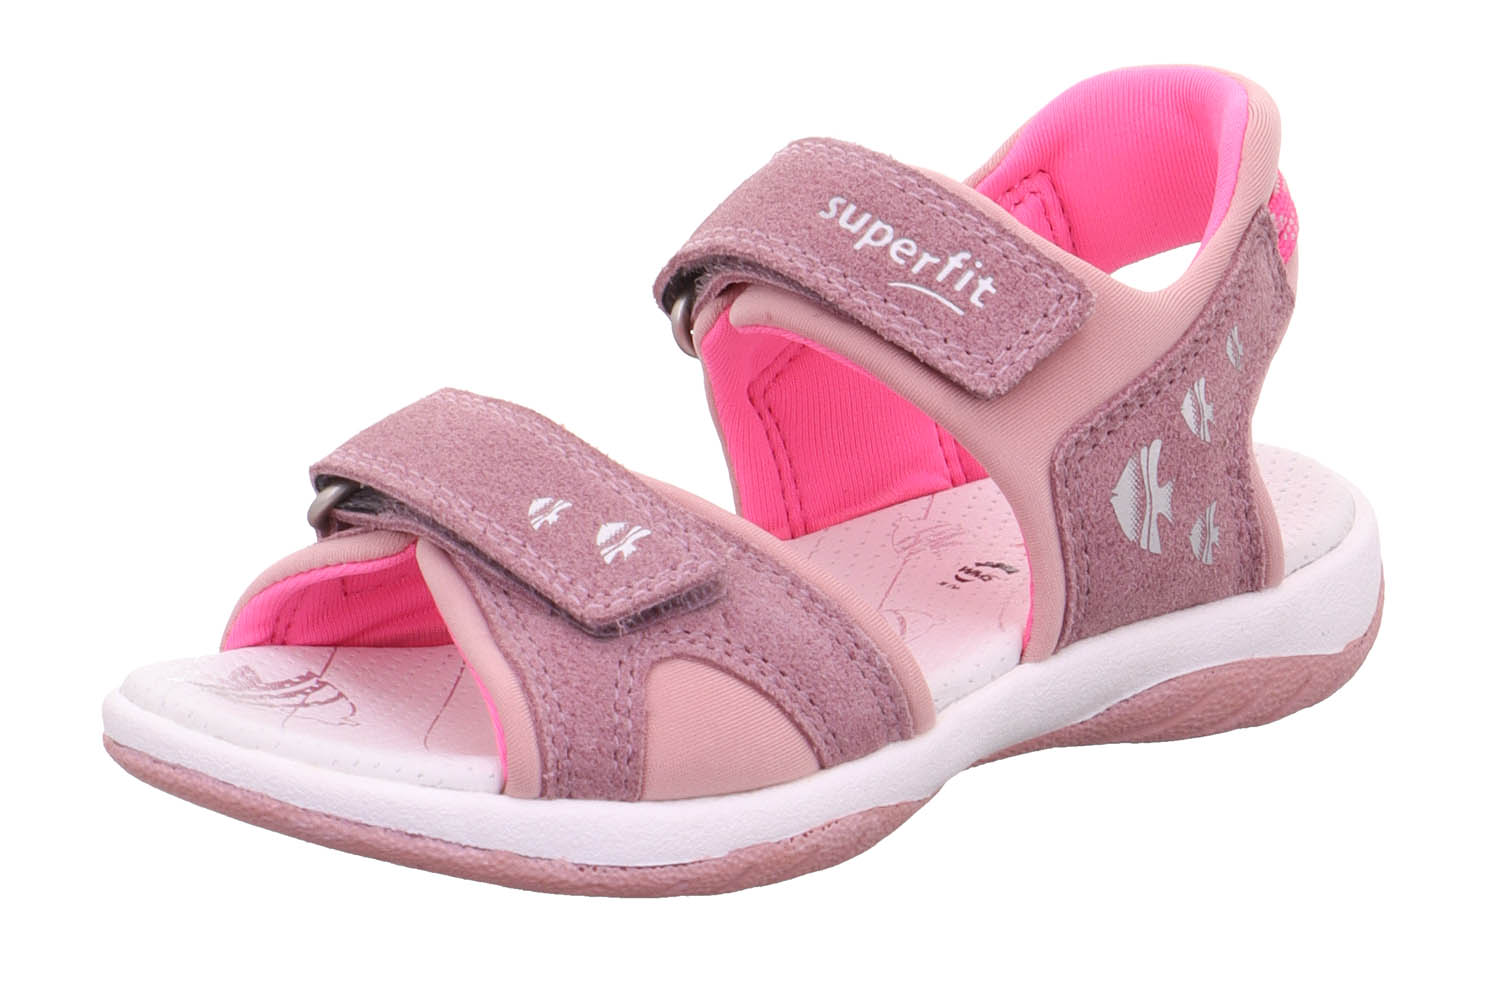 Босоножки Superfit для девочек, размер RU 30, фиолетовый и розовый, 1-006127-8500